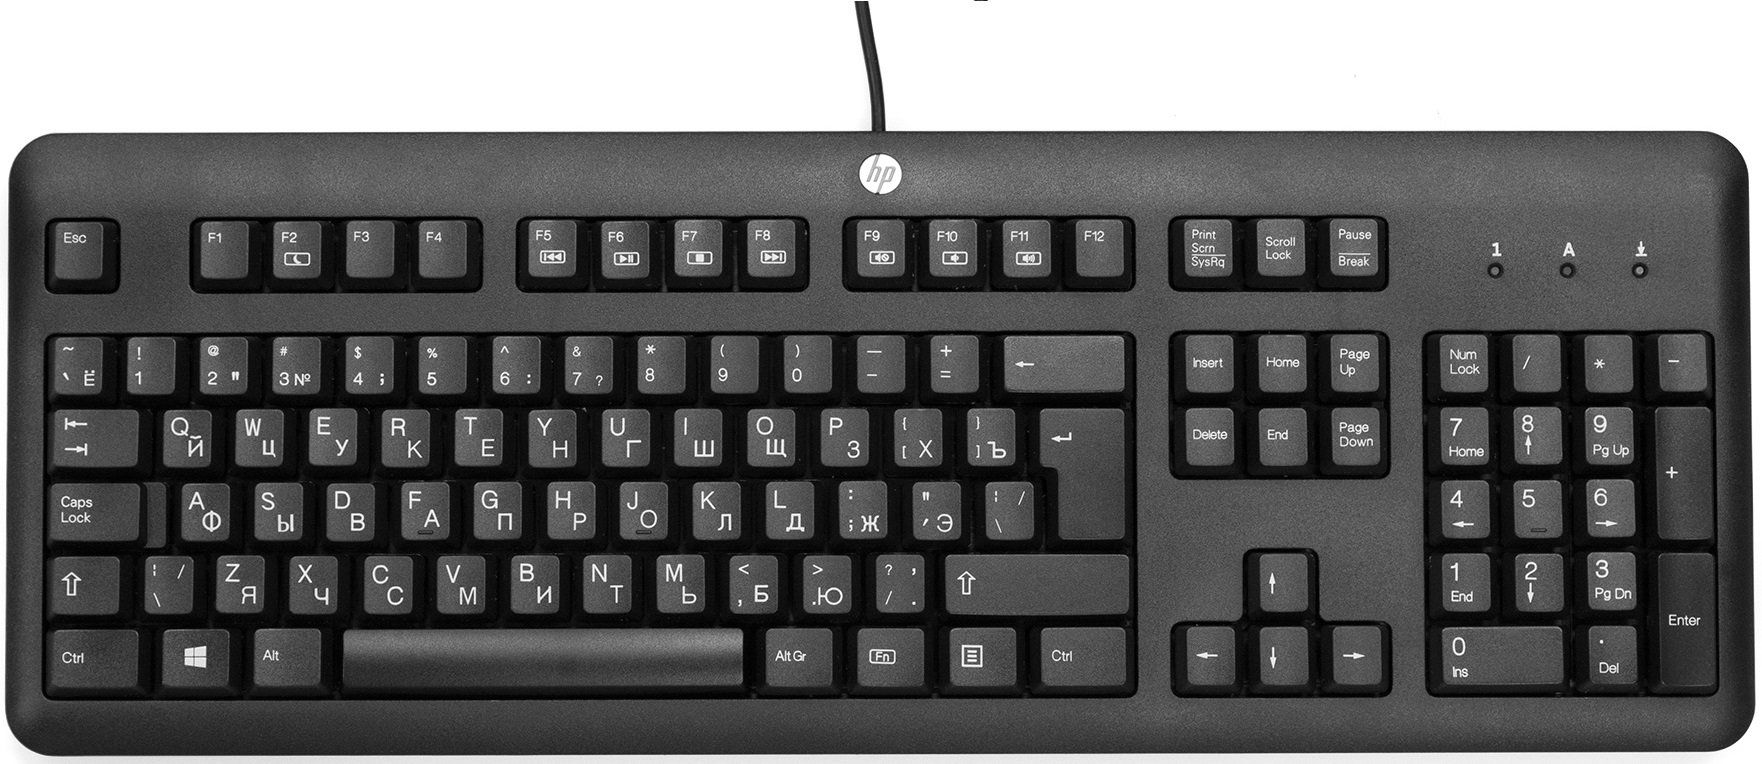 Як під'єднати бездротову клавіатуру HP?